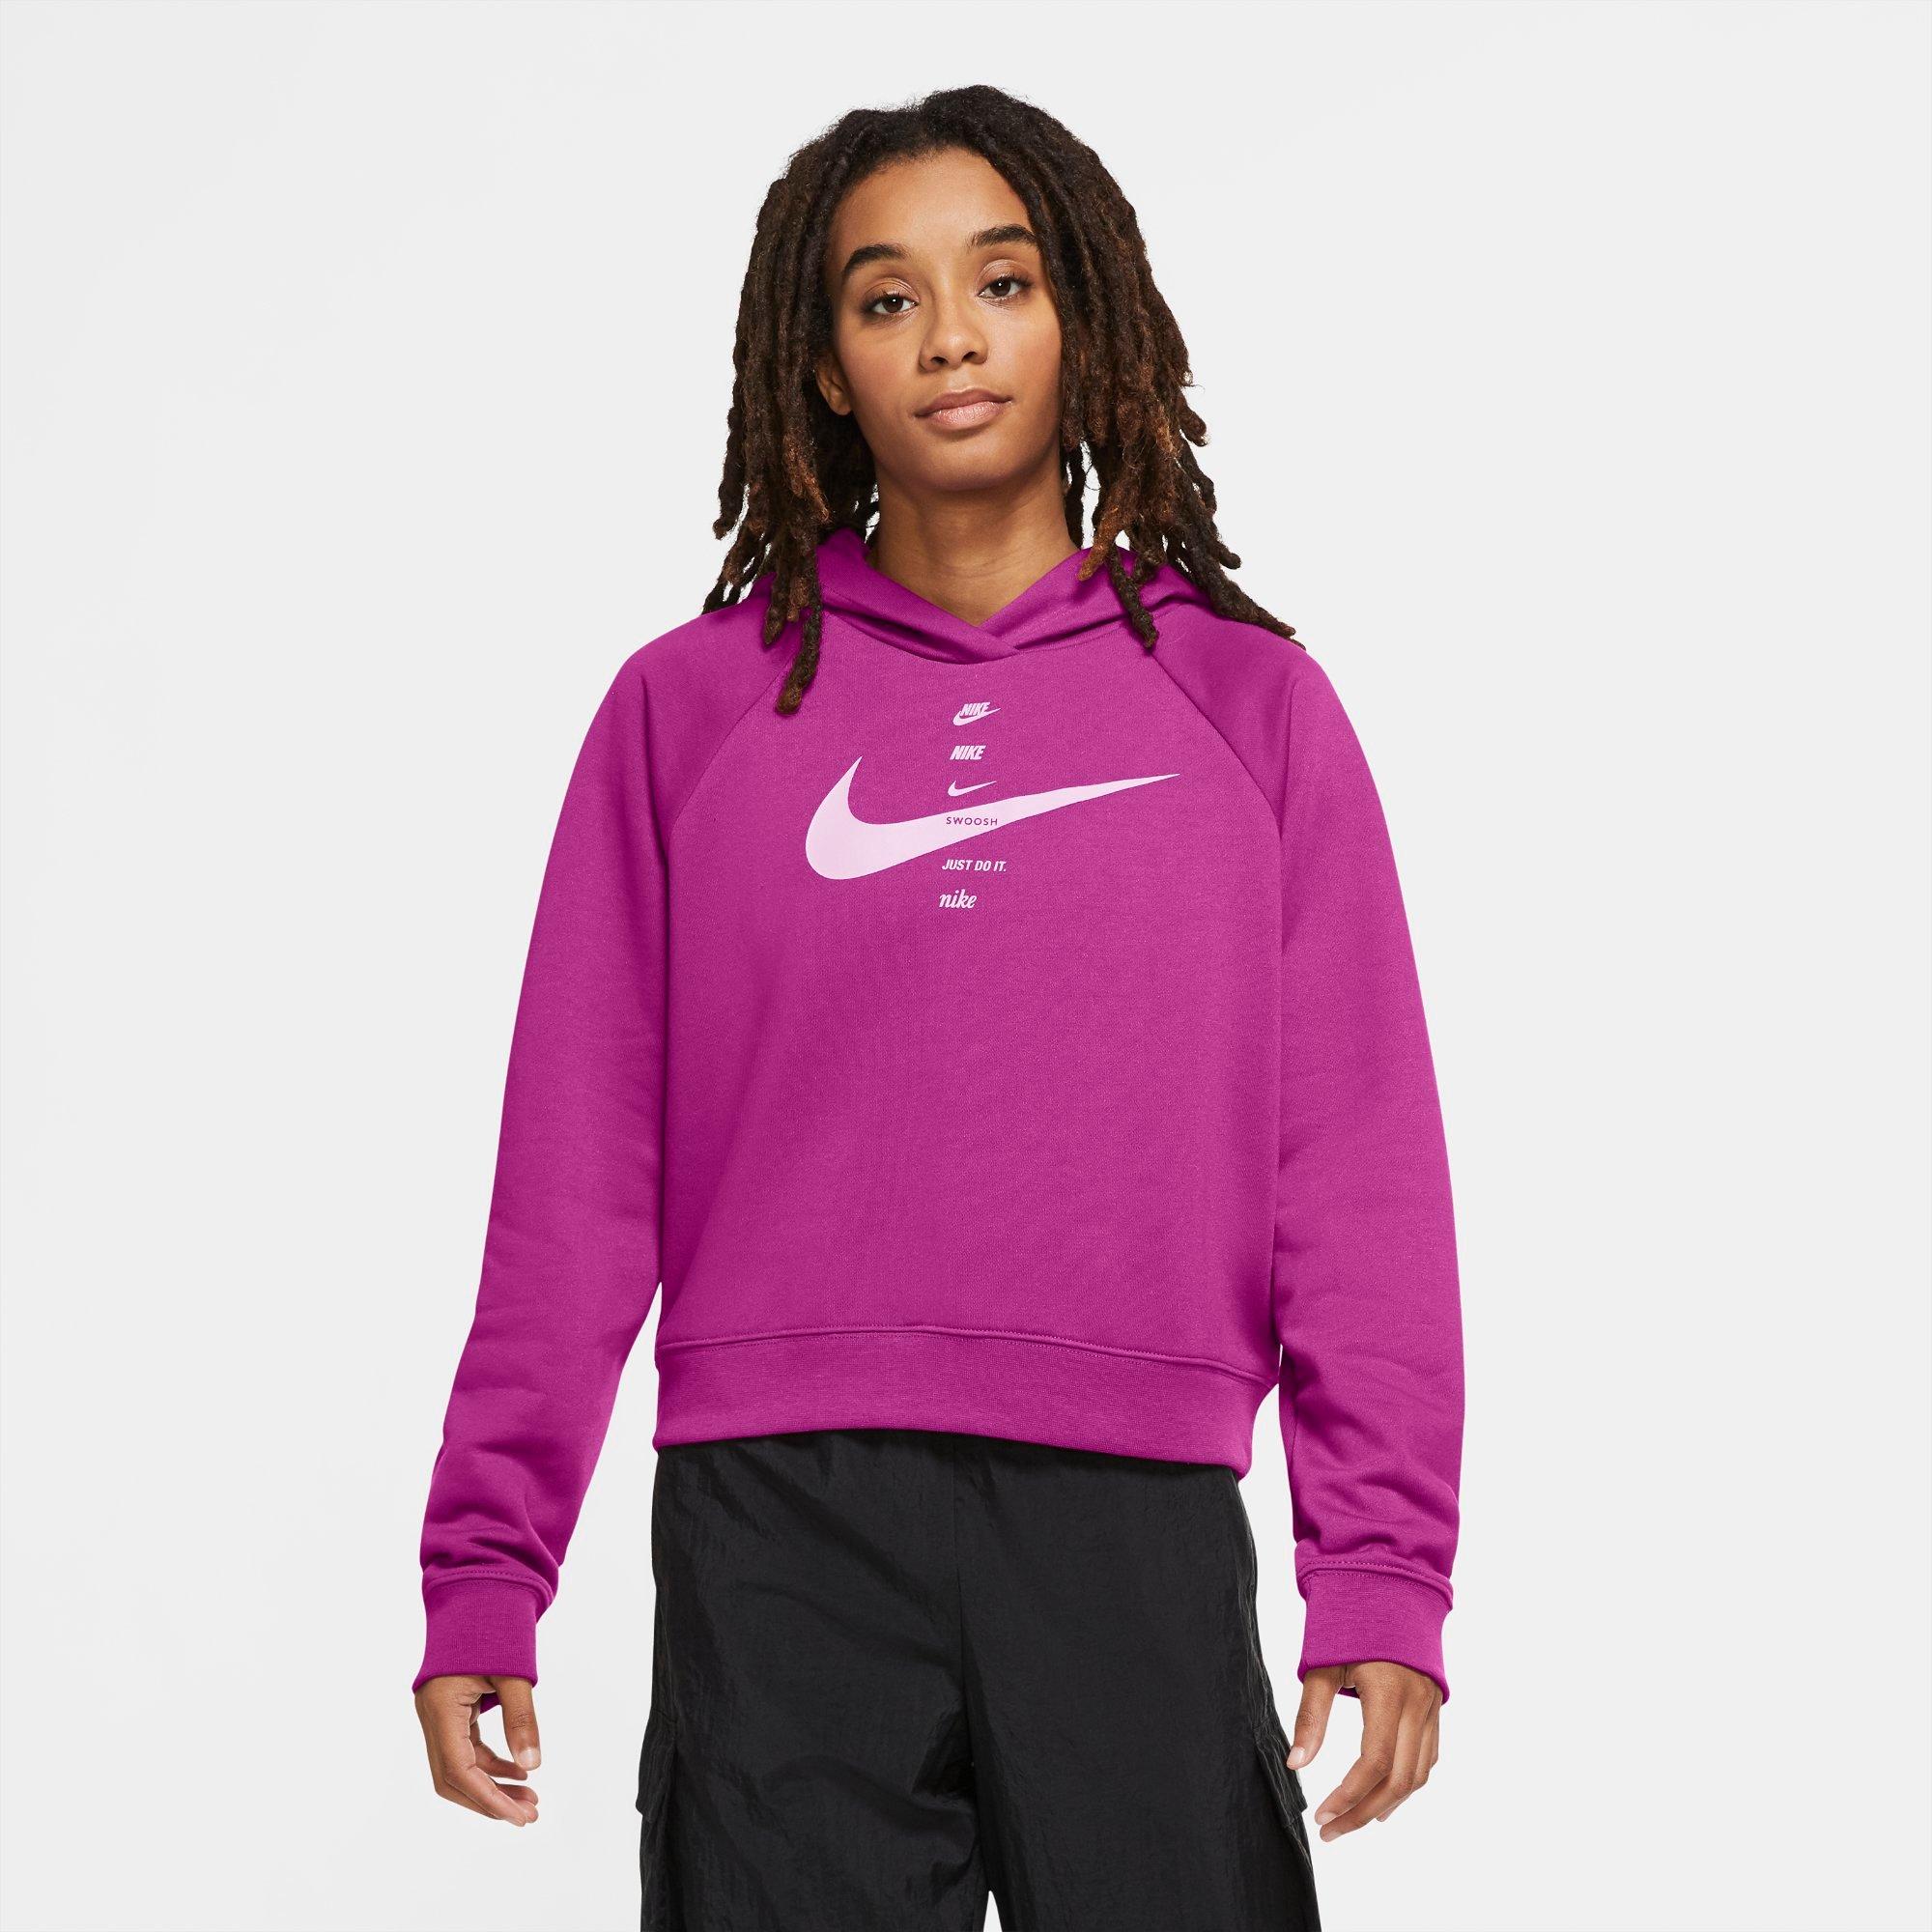 nike purple sweatsuit